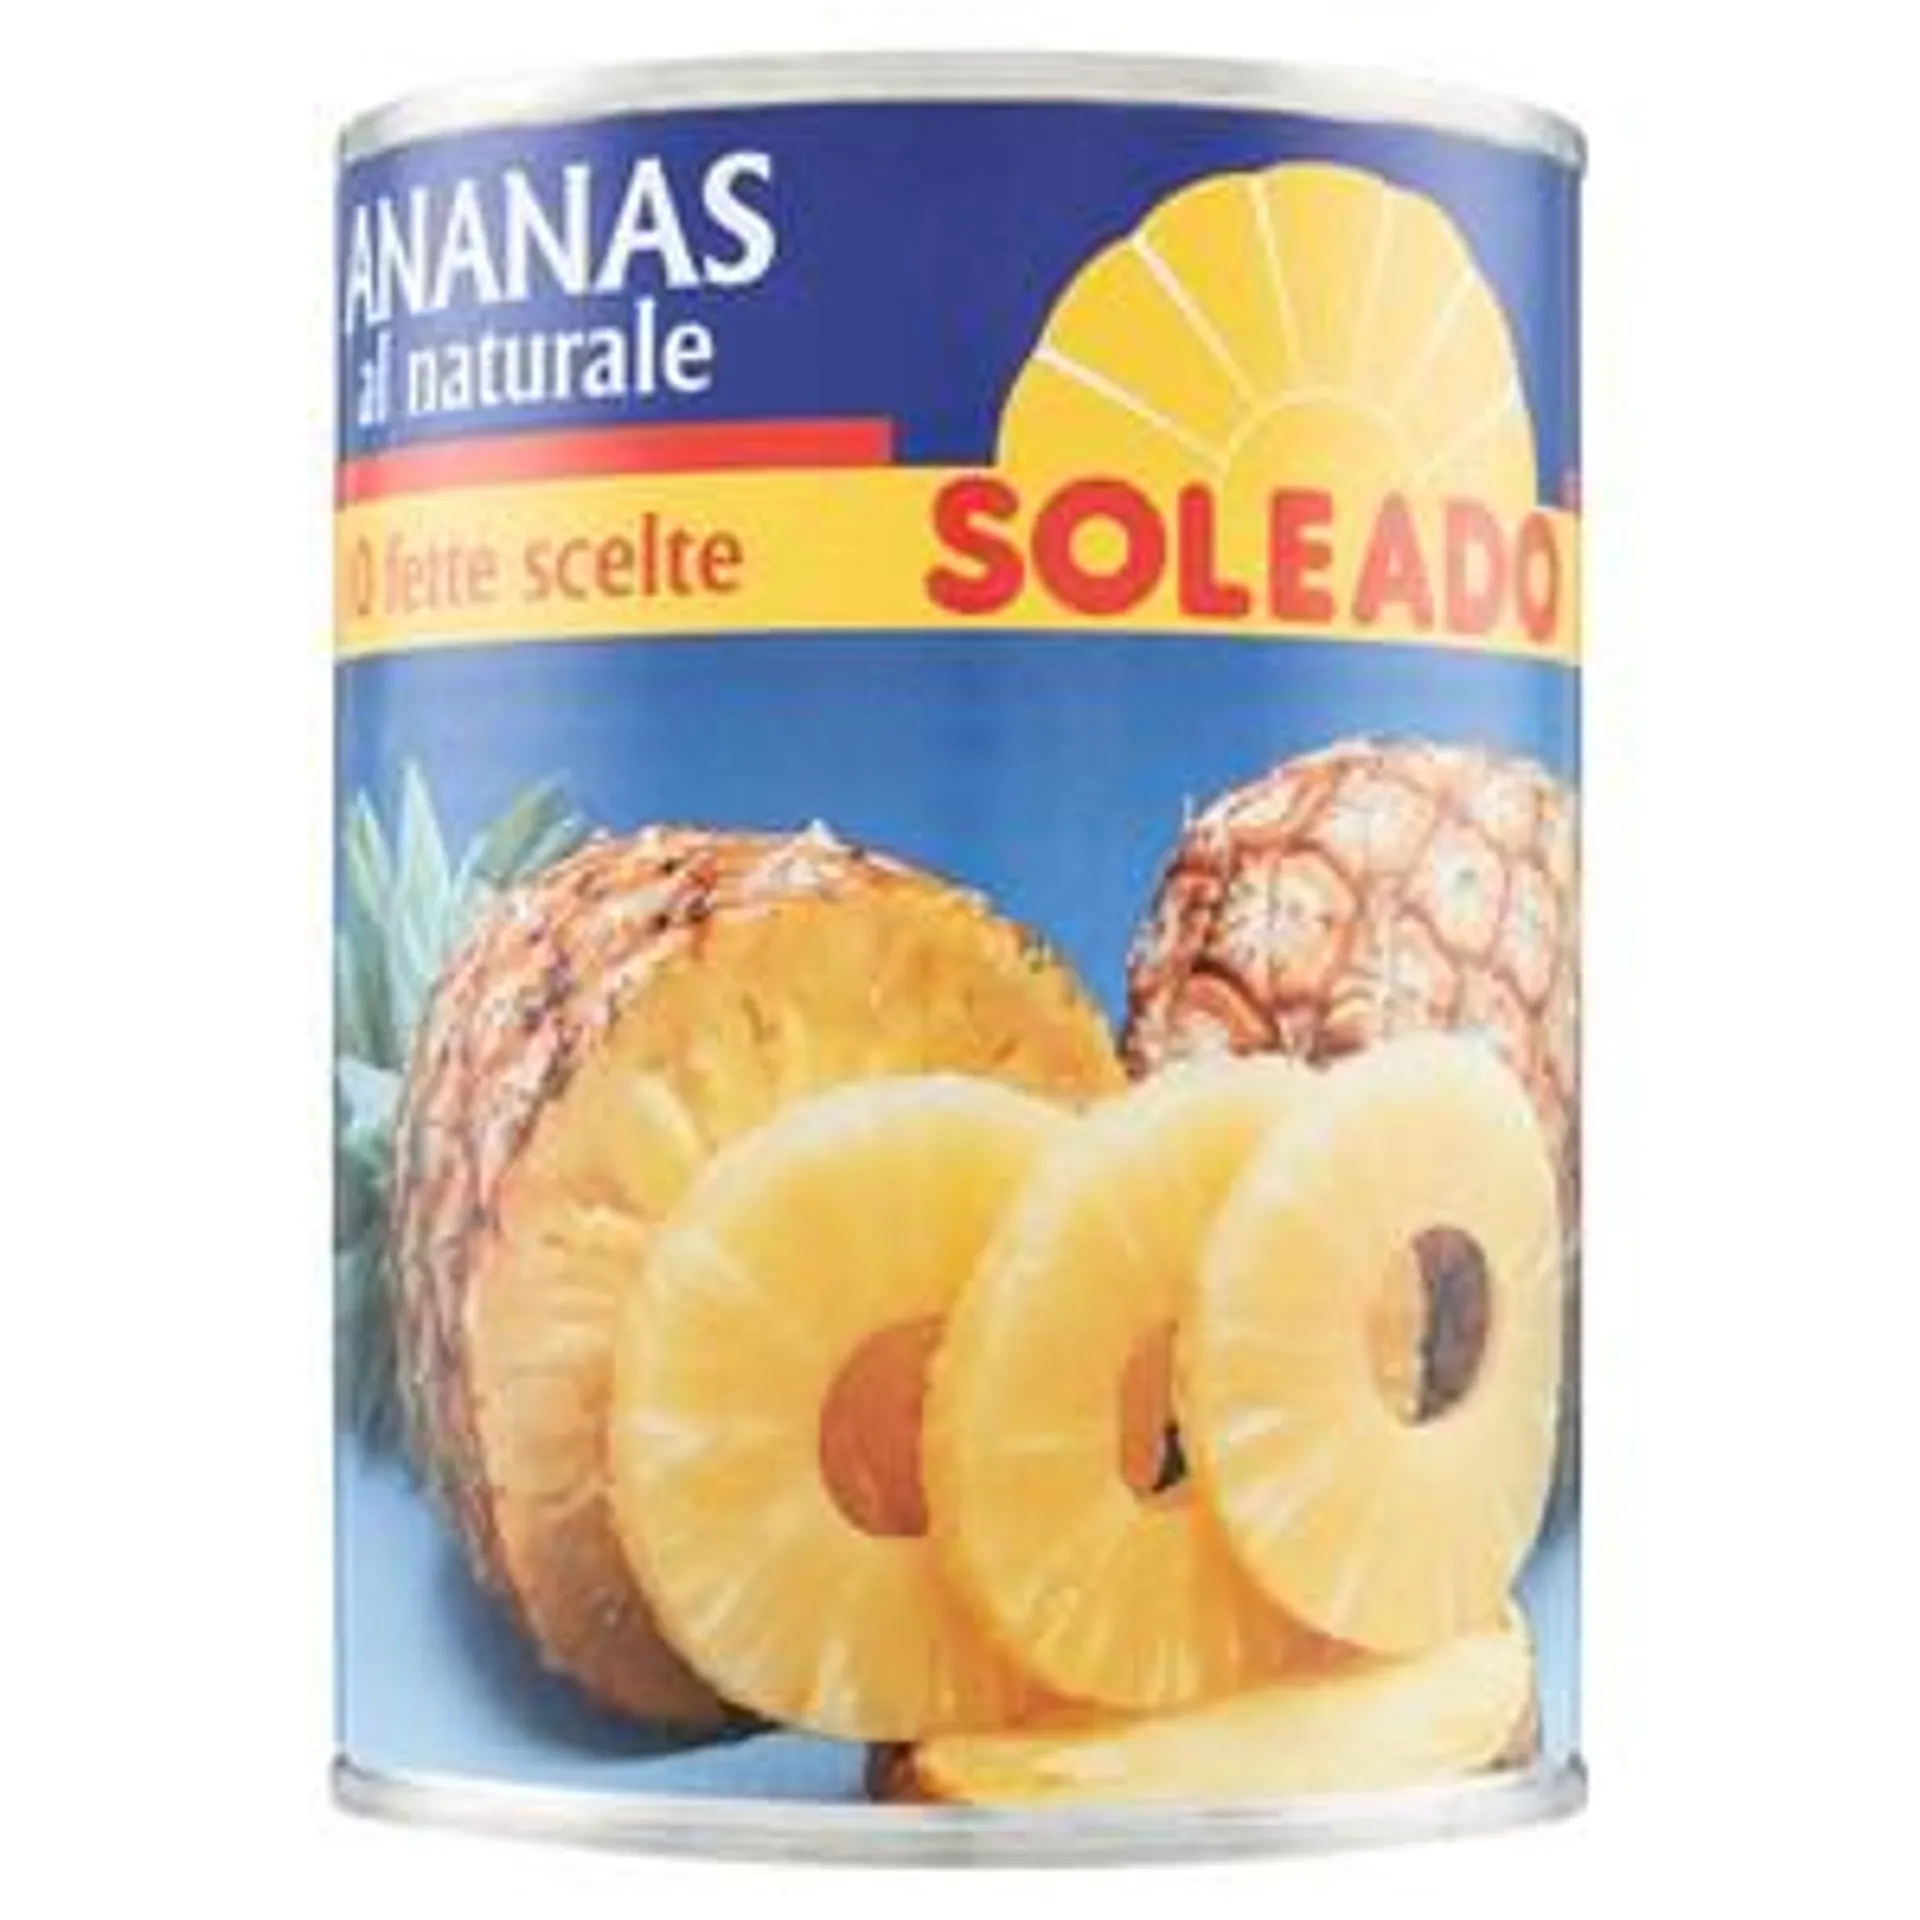 Ananas Naturale Soleado